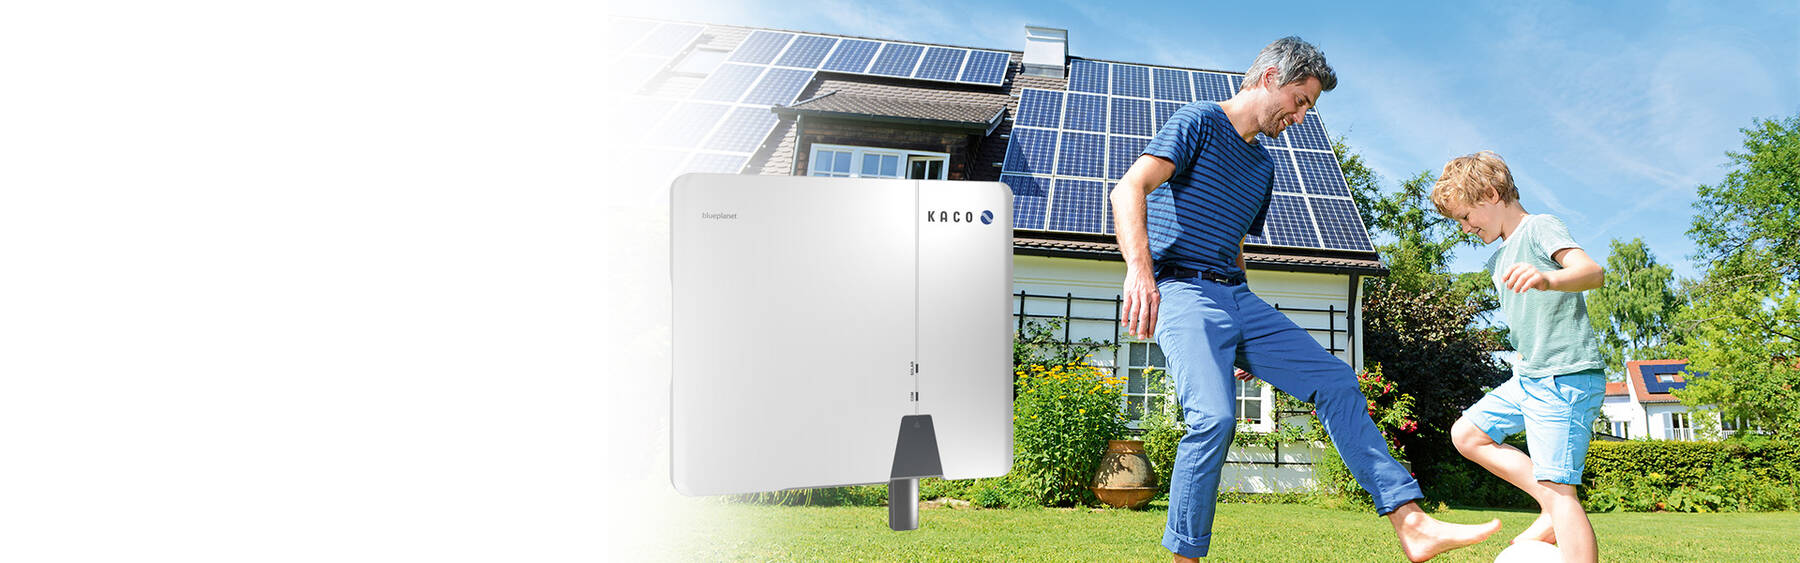 blueLog X Series - Monitorización y control de sistemas solares fotovoltaicos